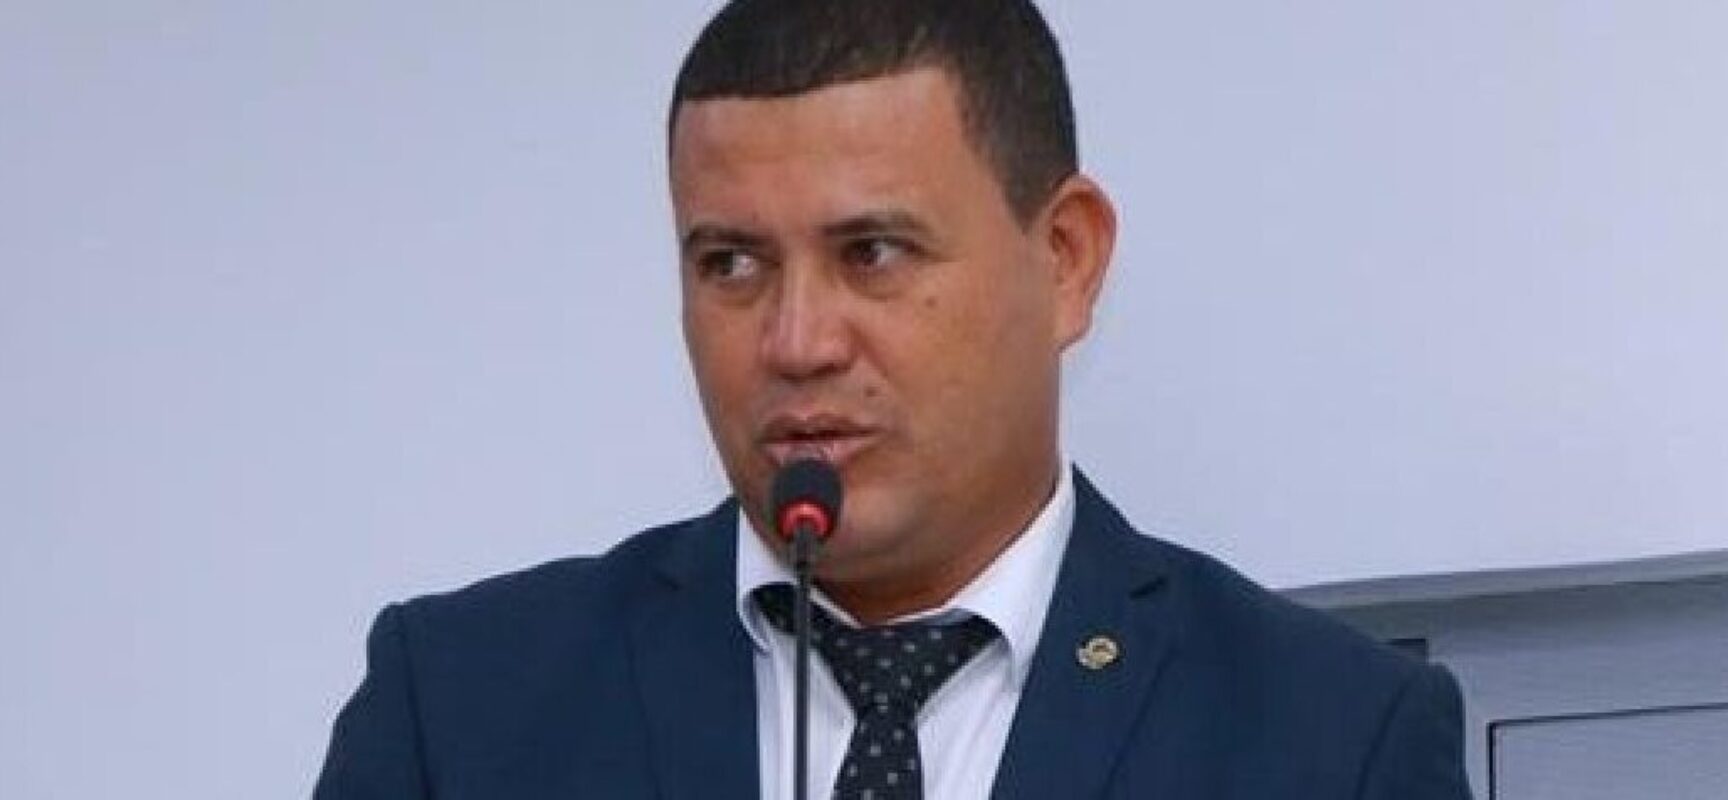 Suspeito de balear vereador em atentado no sul da Bahia é detido